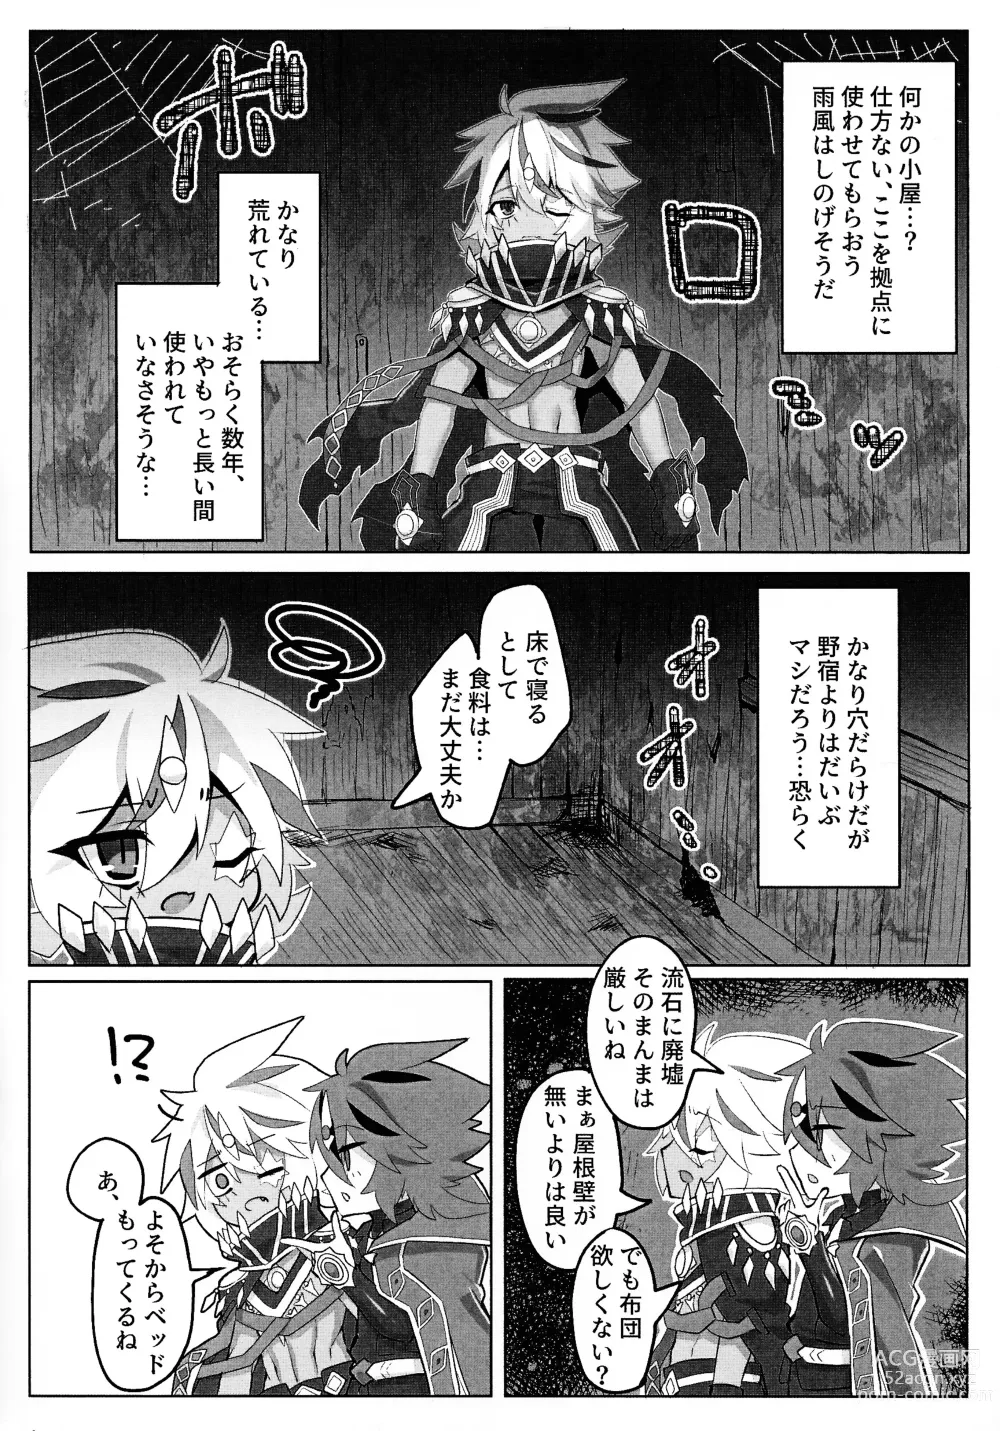 Page 5 of doujinshi Kemono no naku mori